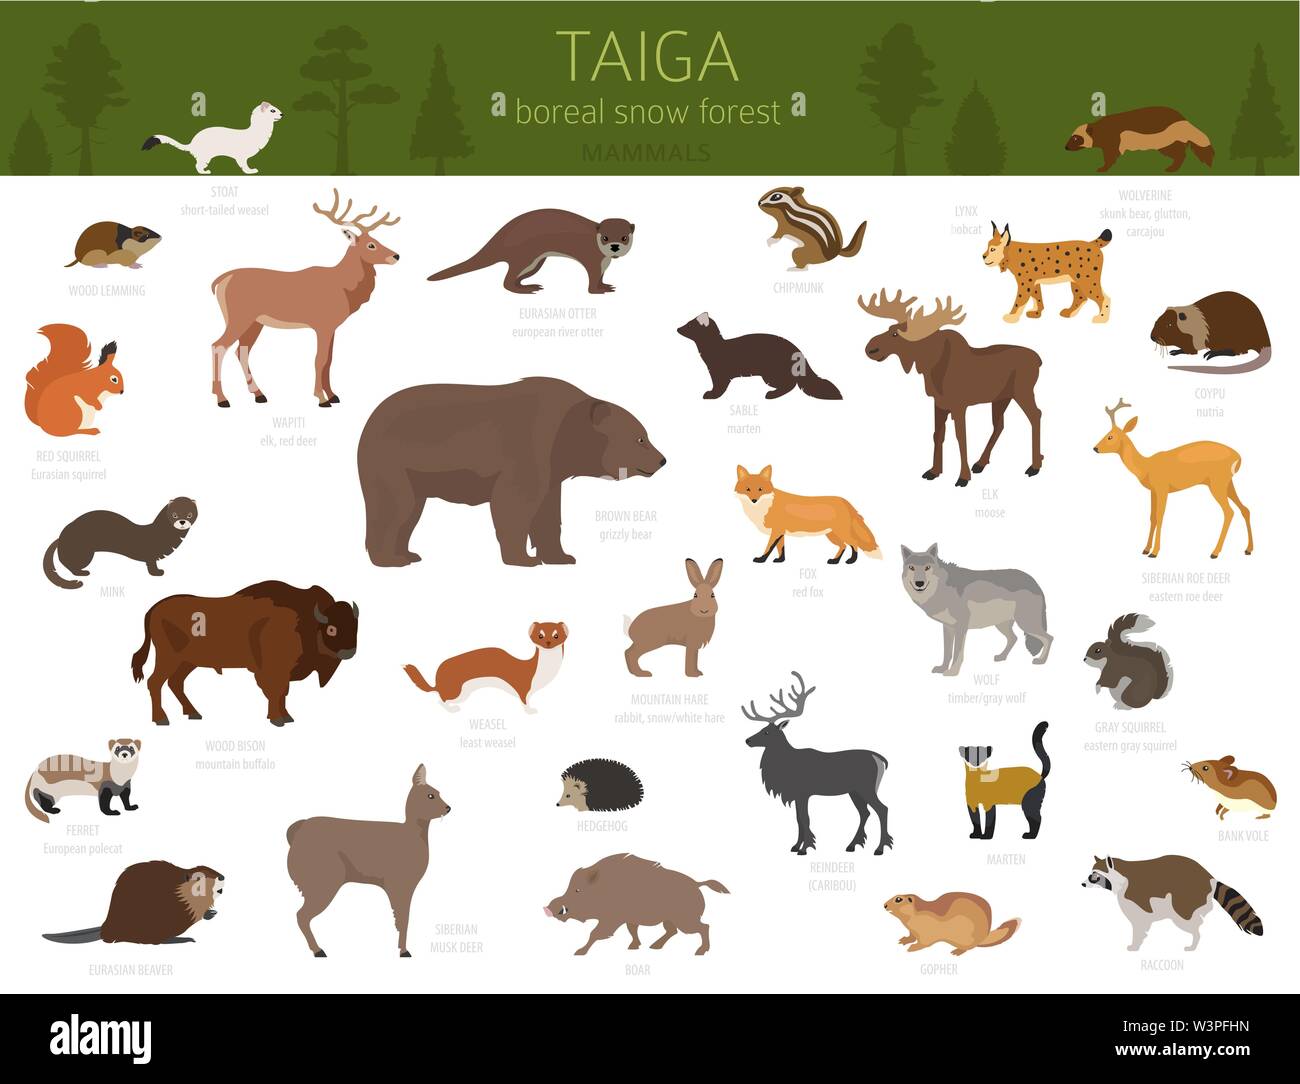 Bioma de taiga, bosque boreal de nieve. El ecosistema terrestre mapa del mundo. Animales, pájaros, peces y plantas diseño infográfico. Ilustración vectorial Ilustración del Vector